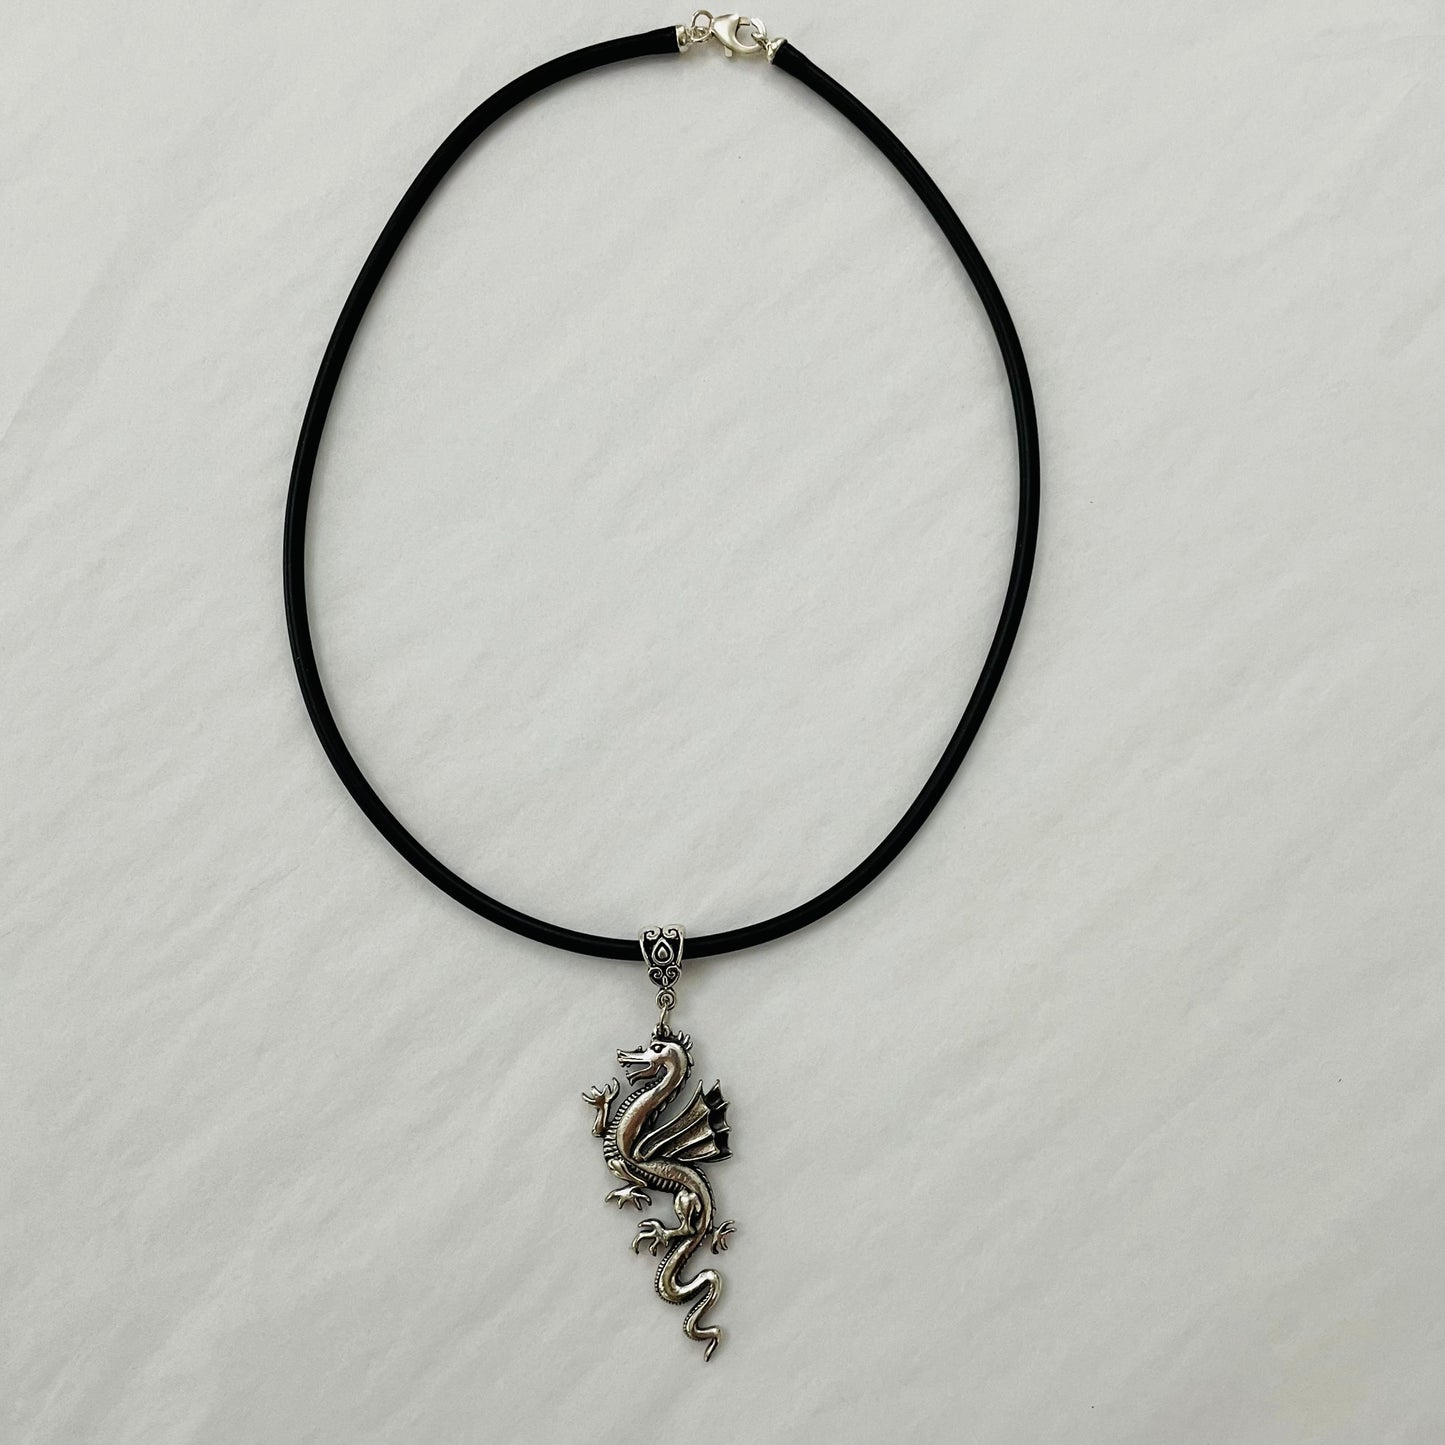 Calypso Flash Necklace - Dragon